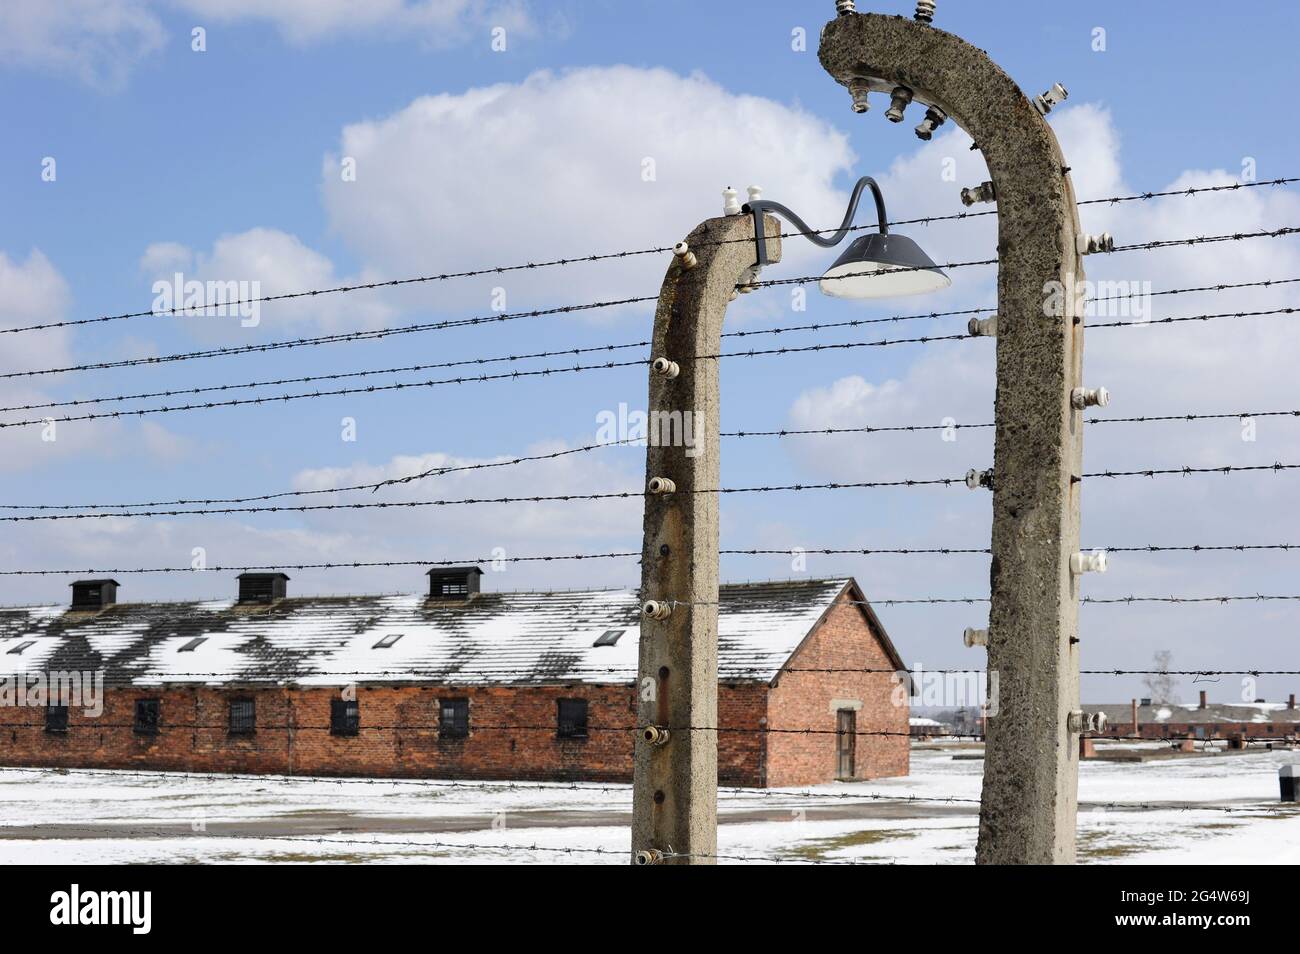 POLEN Auschwitz-Birkenau, Konzentrationslager des deutschen Nazi-Regimes, wo 1 Million juden von der SS (1940–1945) ermordet wurden, UNESCO-Welterbe, Zaun und barack für Gefangene / POLEN Auschwitz-Birkenau II, deutsches nationalistisches Konzentrations- und Vernichtungslager (1940–1945) , hier wurden ca. 1 Million Juden durch die SS ermordet Stockfoto